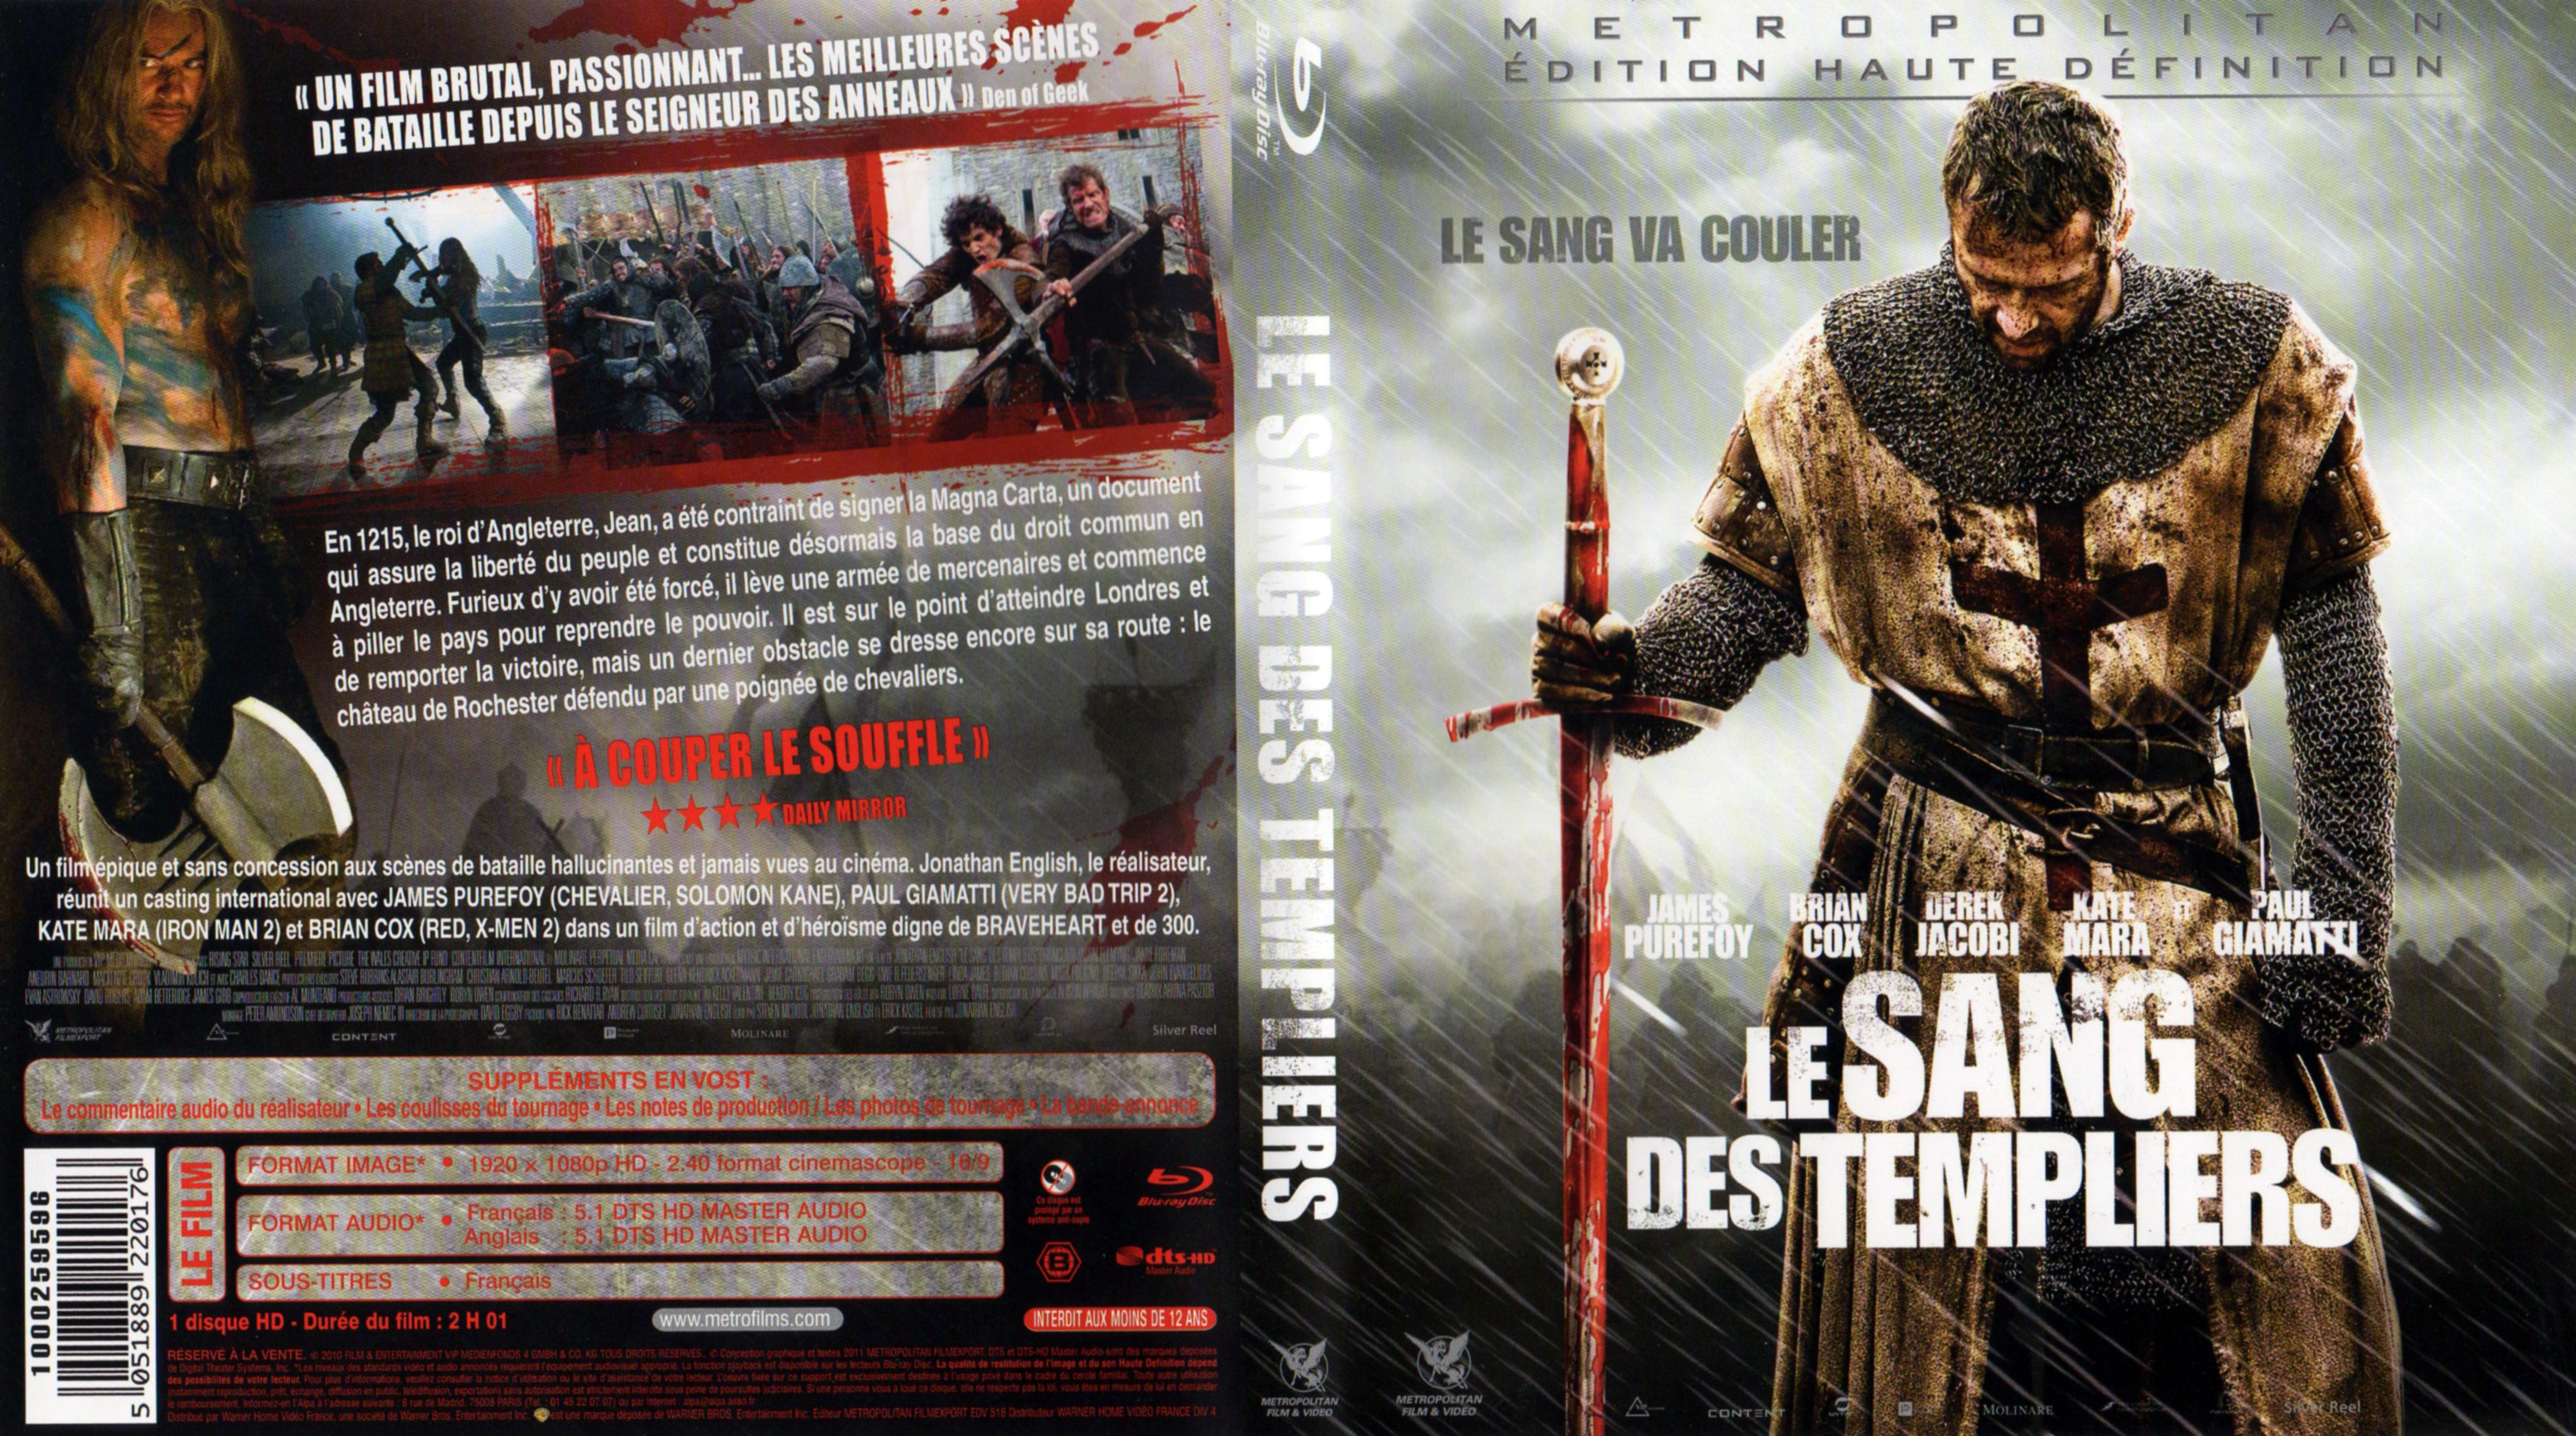 Jaquette DVD Le sang des Templiers (2010) (BLU-RAY)